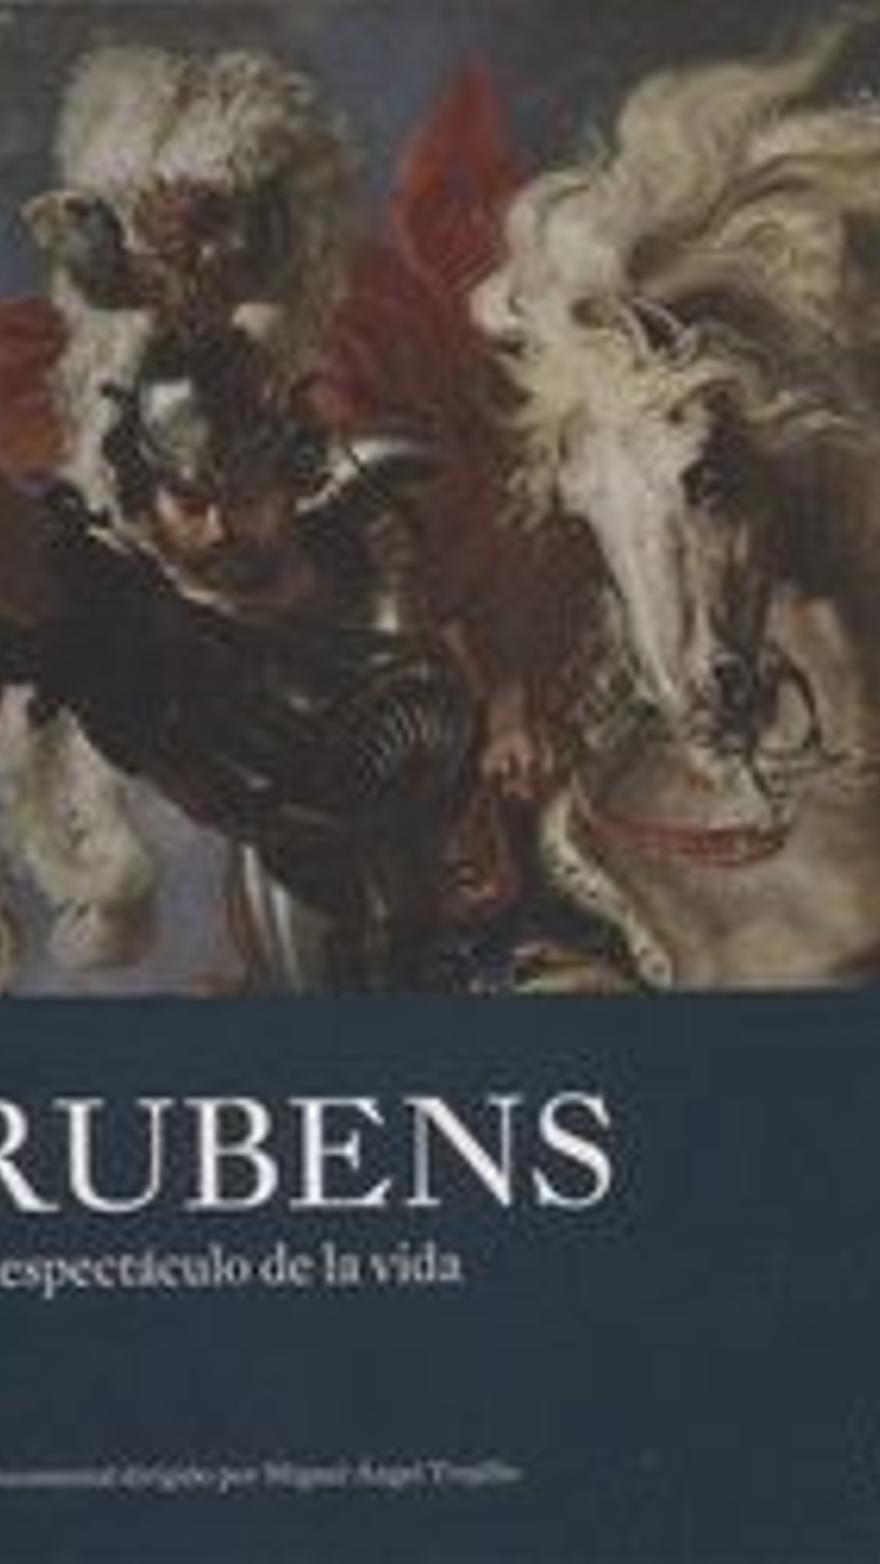 Rubens, el espectáculo de la vida